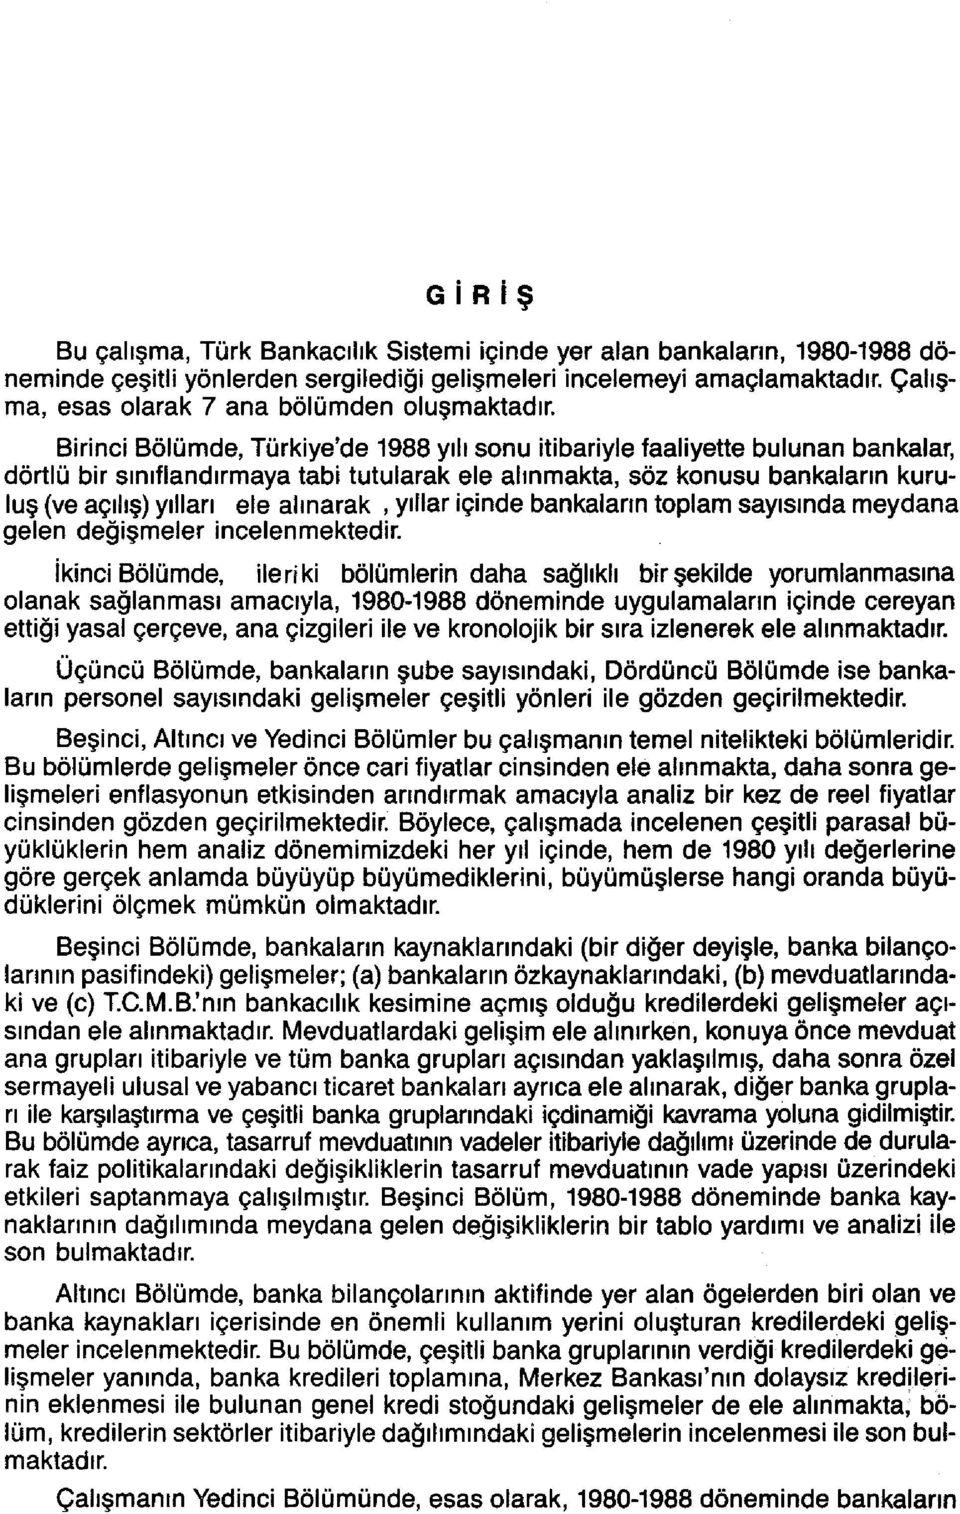 Birinci Bölümde, Türkiye'de 1988 yılı sonu itibariyle faaliyette bulunan bankalar, dörtlü bir sınıflandırmaya tabi tutularak ele alınmakta, söz konusu bankaların kuruluş (ve açılış) yılları ele